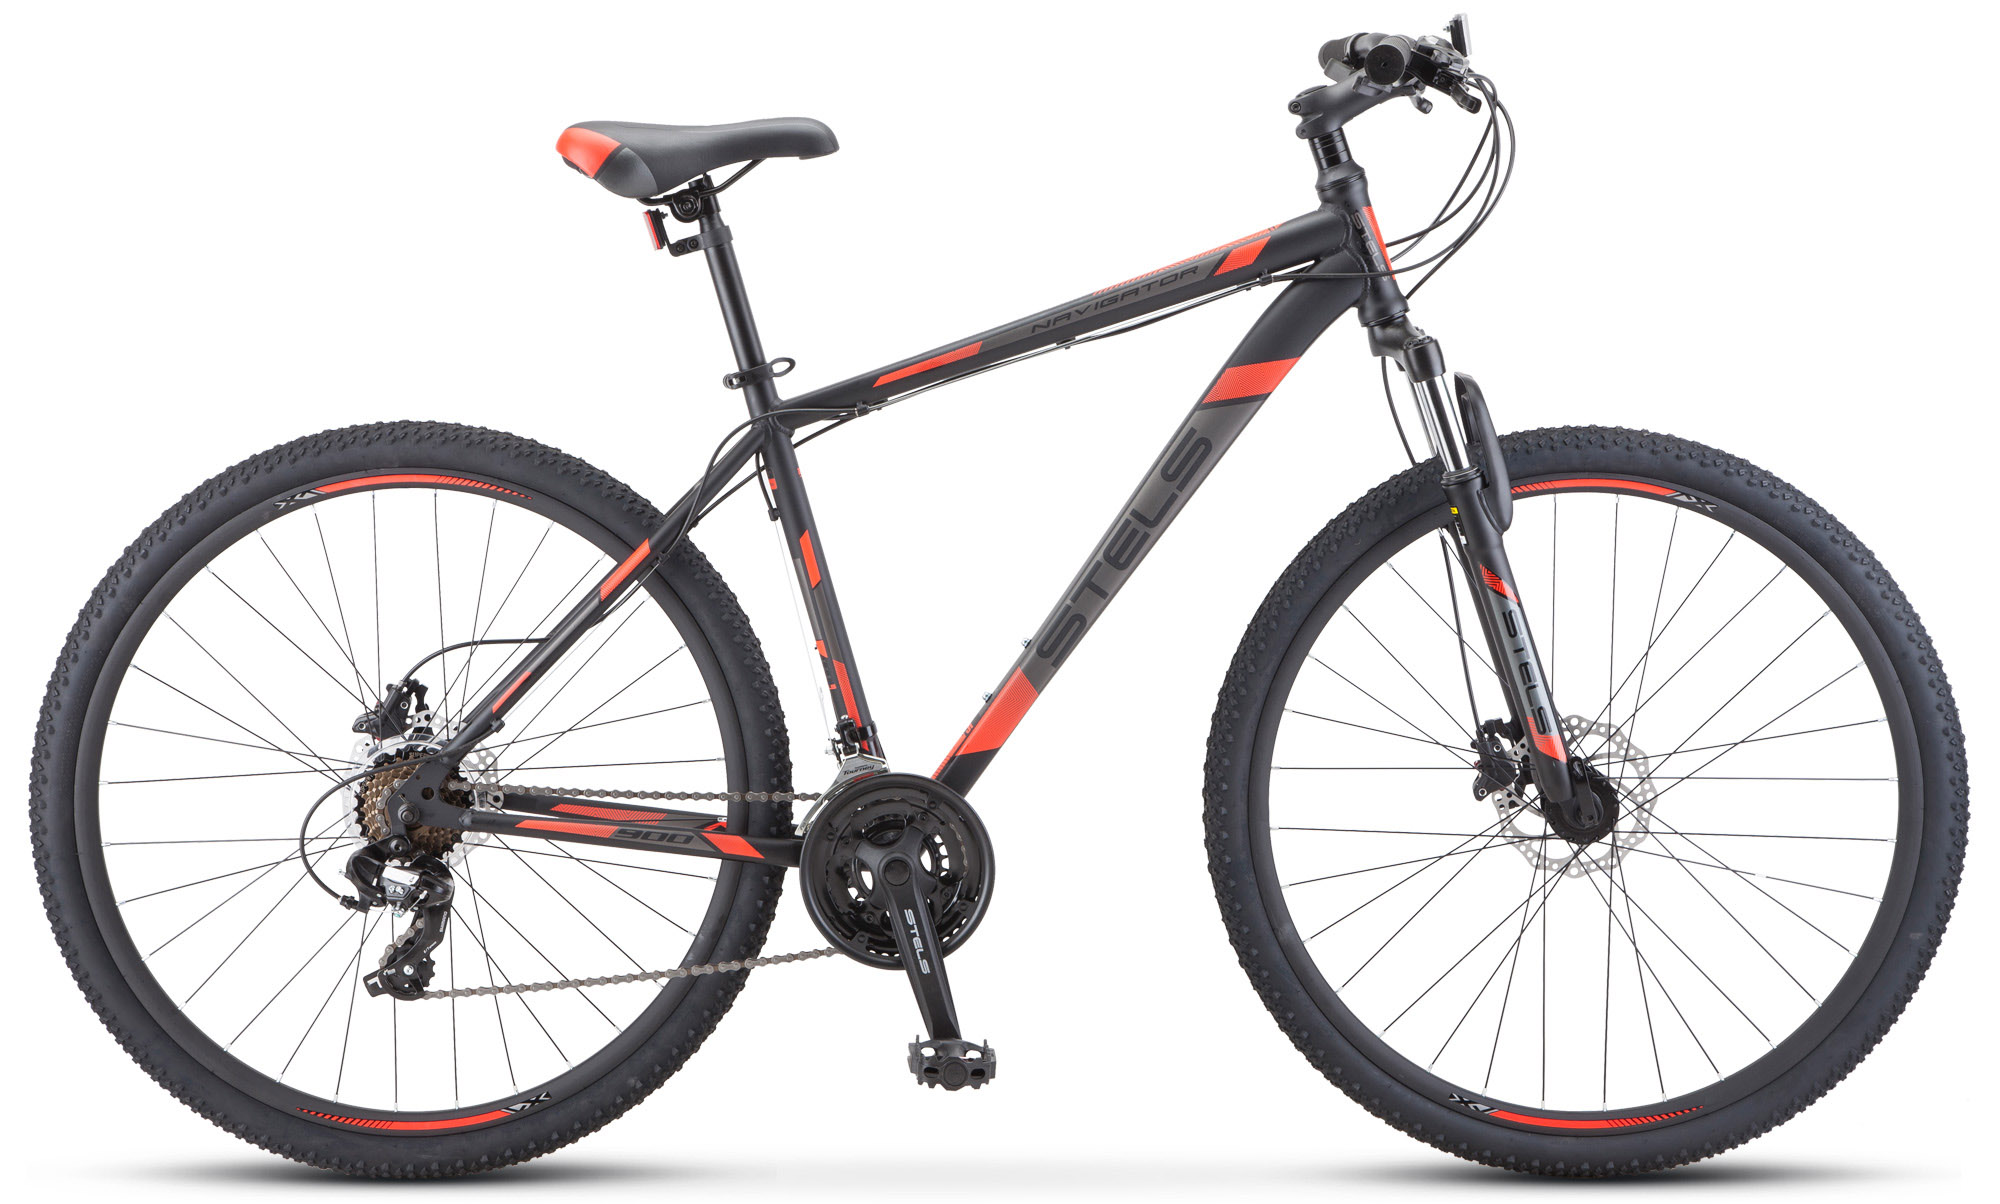  Отзывы о Горном велосипеде Stels Navigator 900 D F010 2020